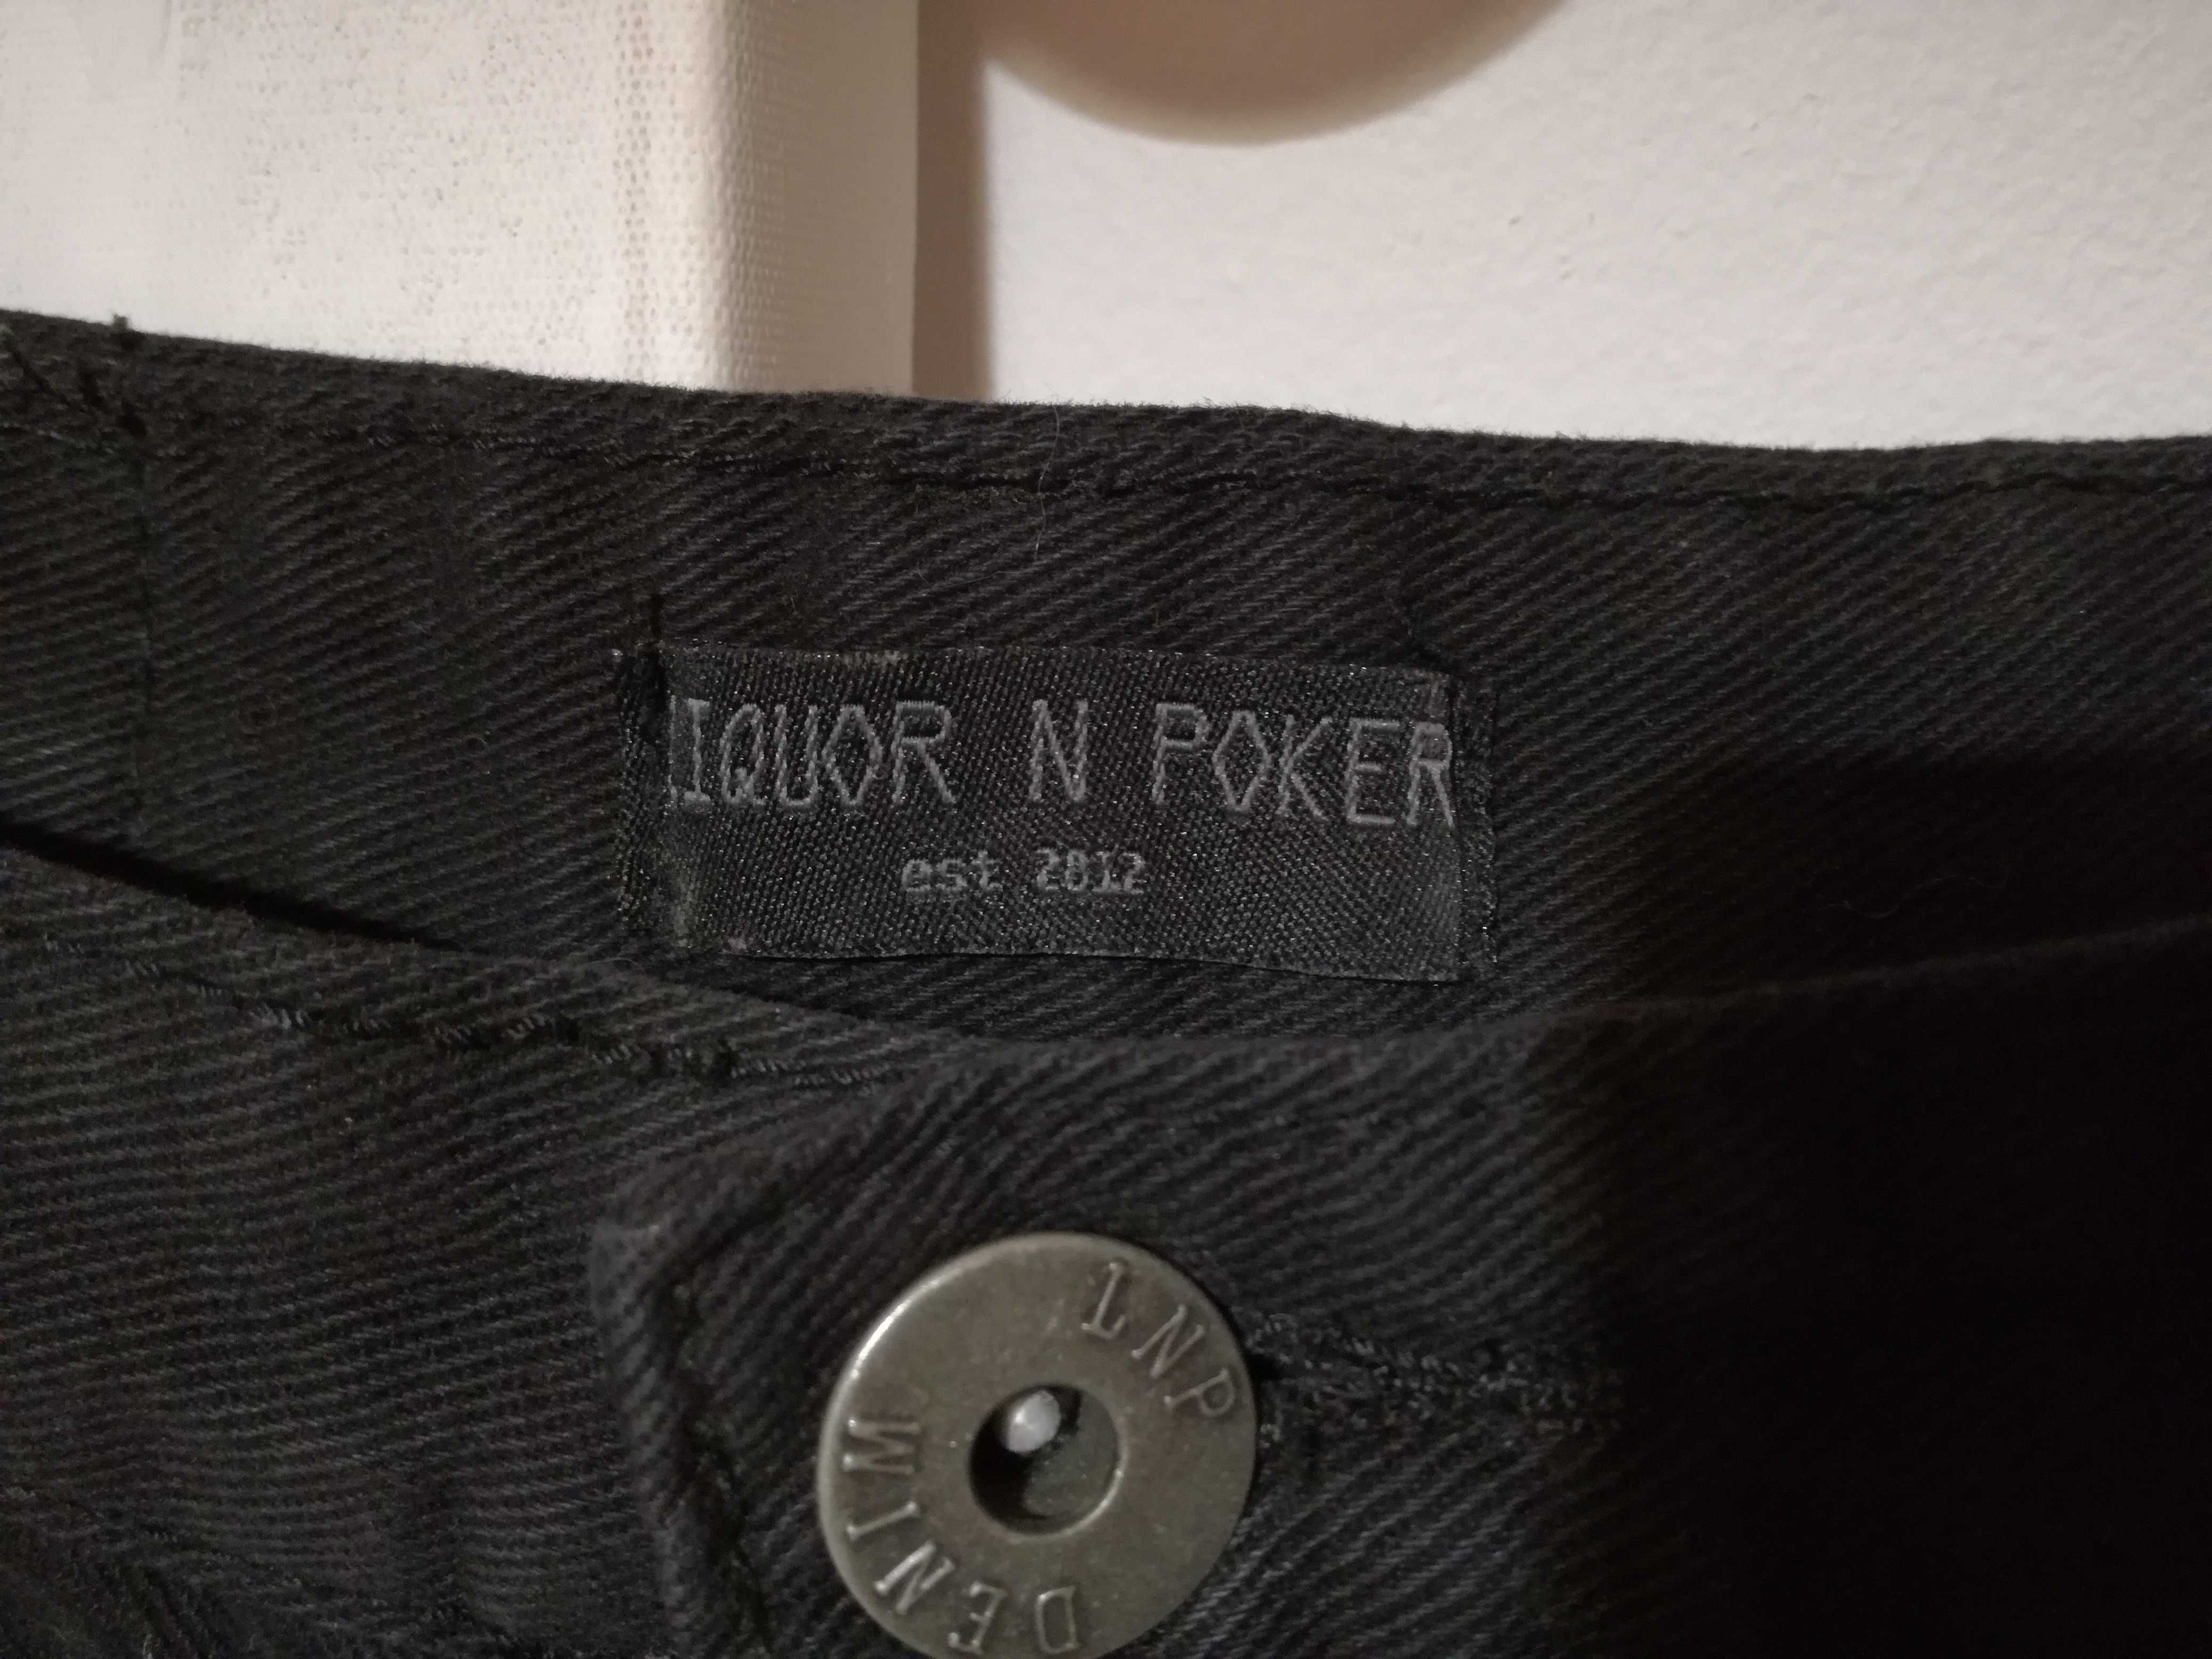 Czarna jeansowa spódniczka Liquor n poker S